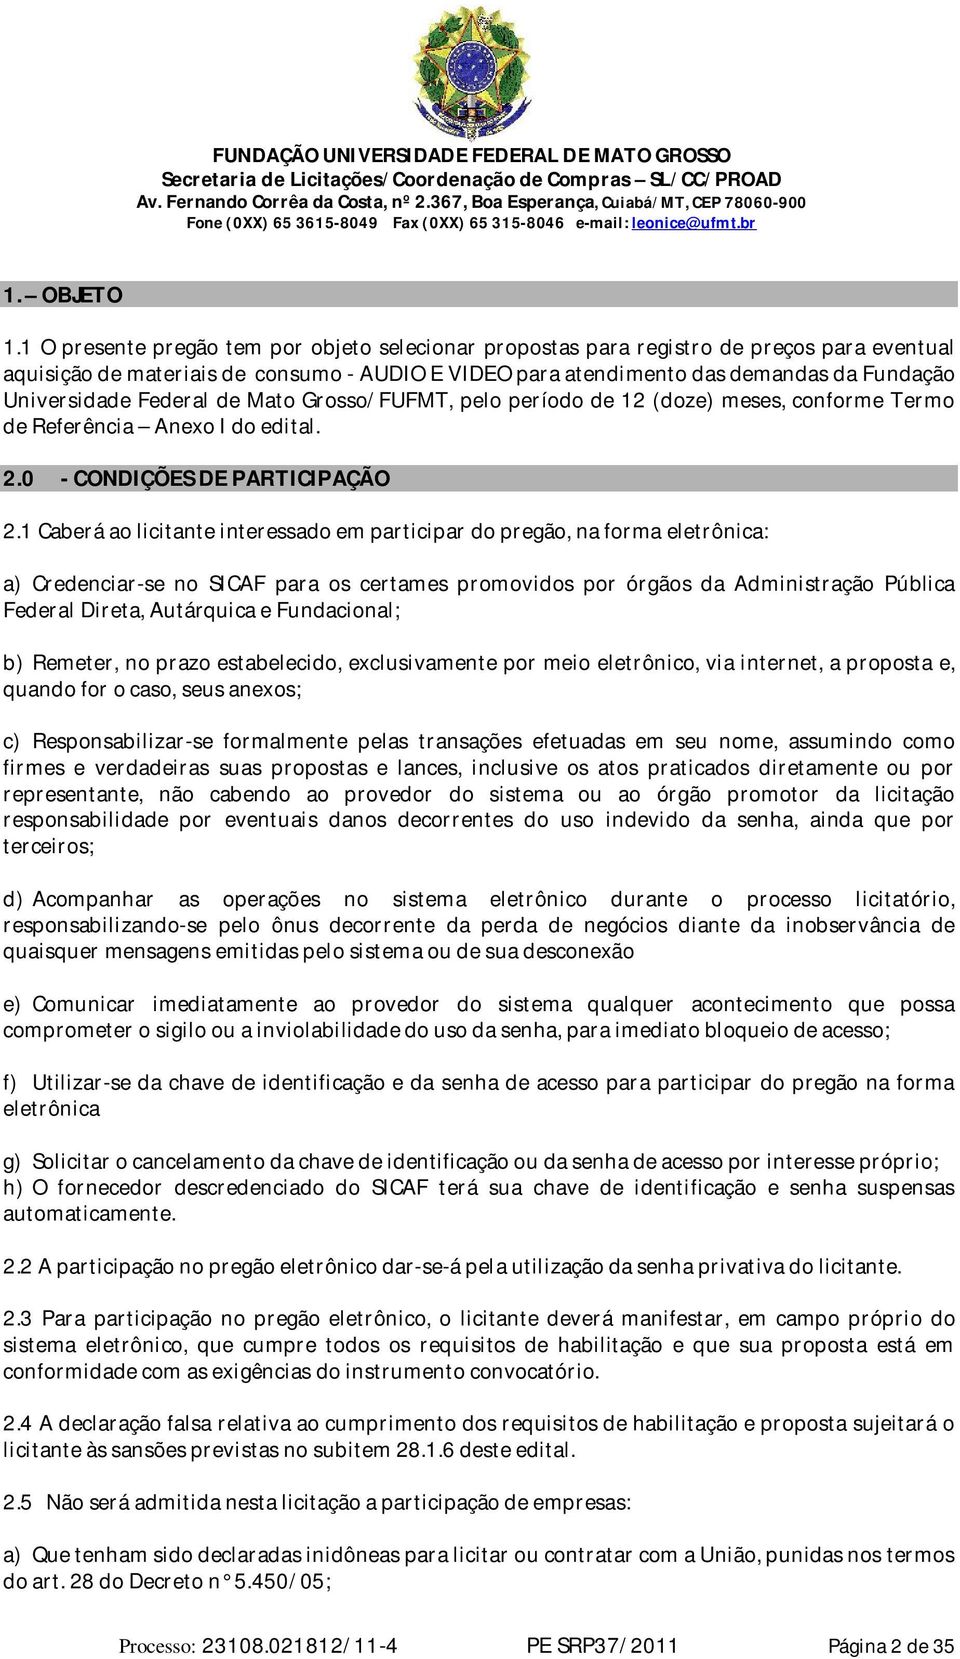 Federal de Mato Grosso/FUFMT, pelo período de 12 (doze) meses, conforme Termo de Referência Anexo I do edital. 2.0 - CONDIÇÕES DE PARTICIPAÇÃO 2.